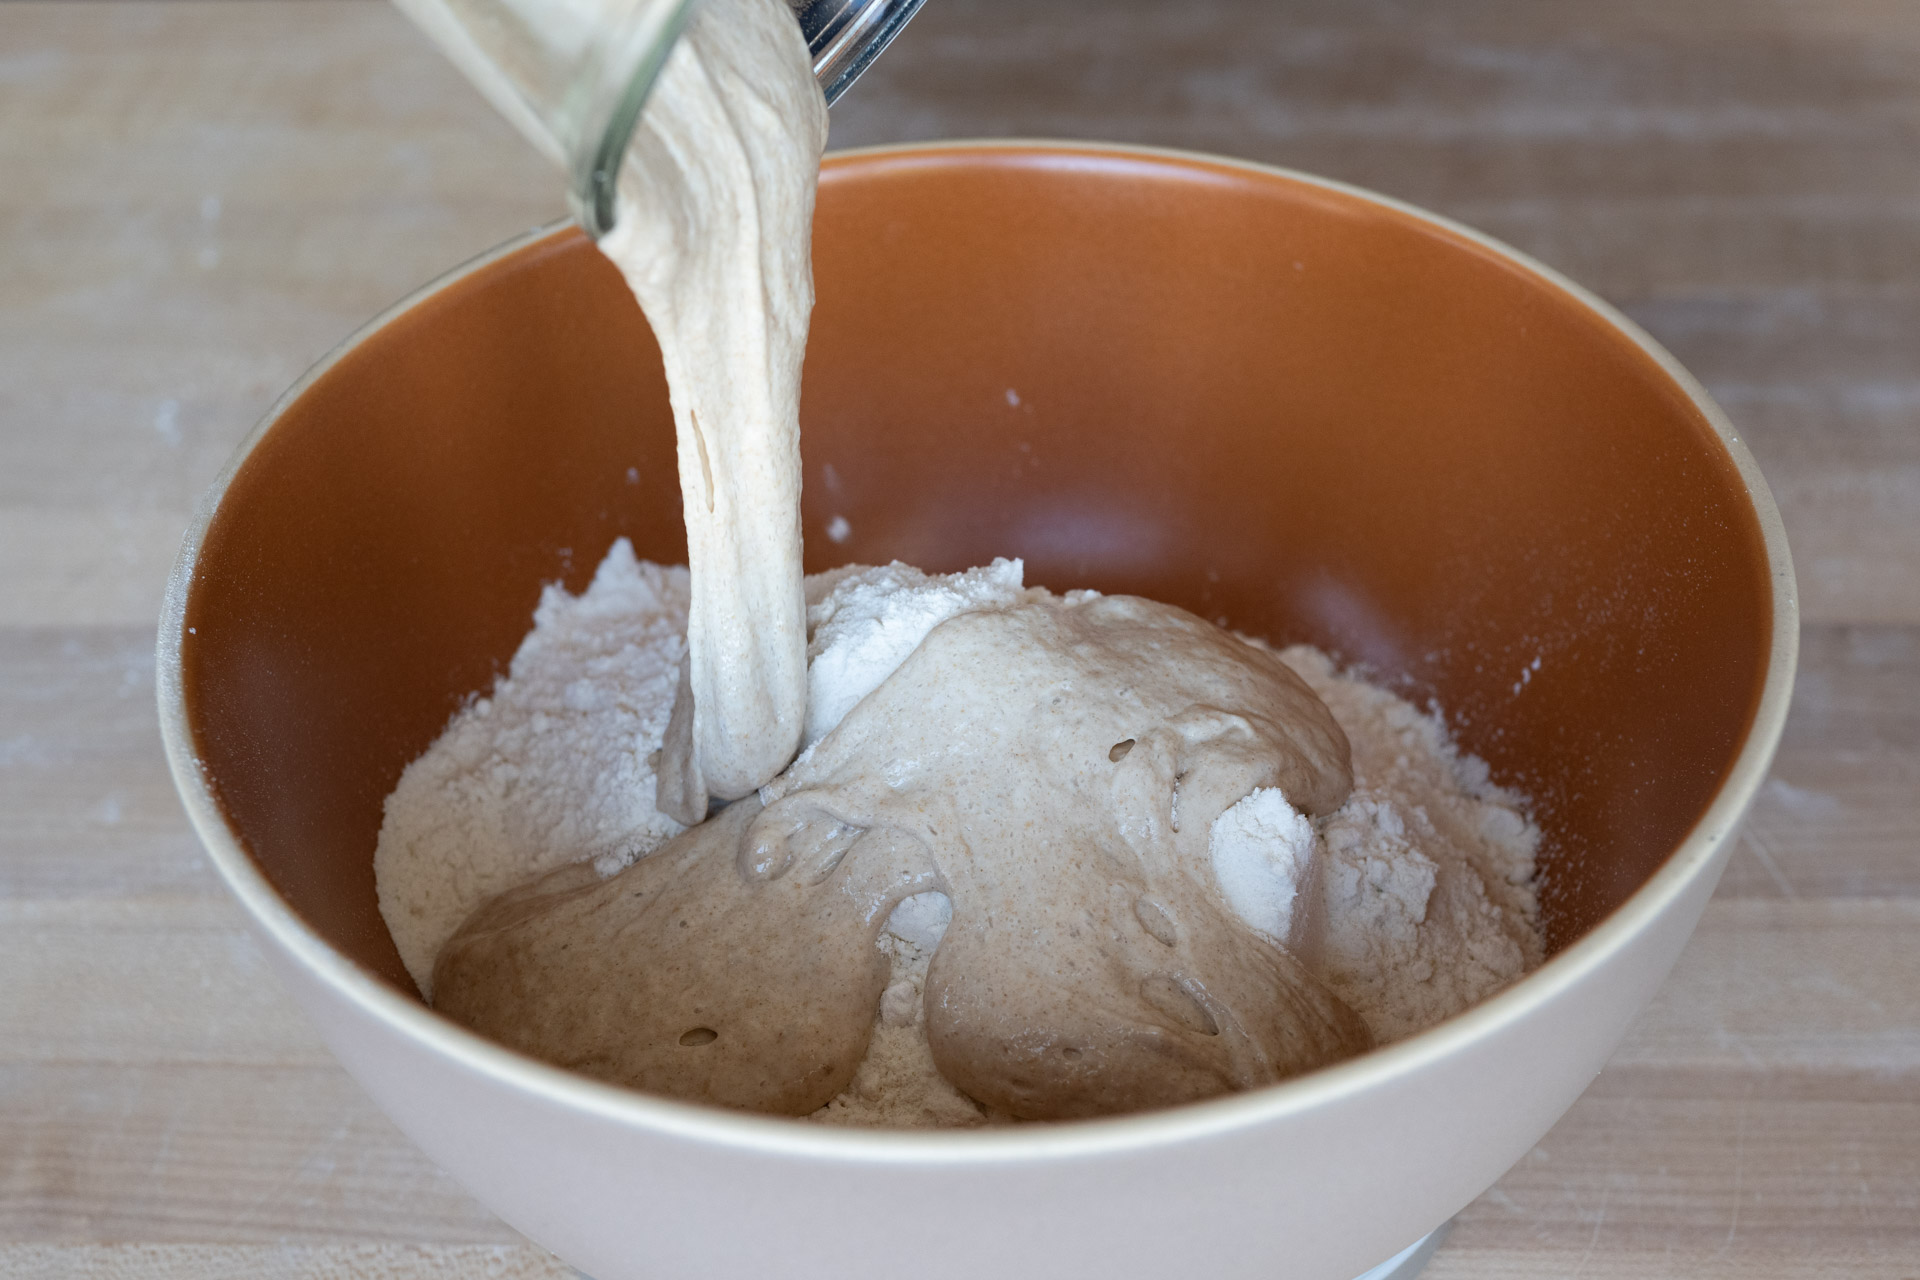 Mixing sourdough starter into flour